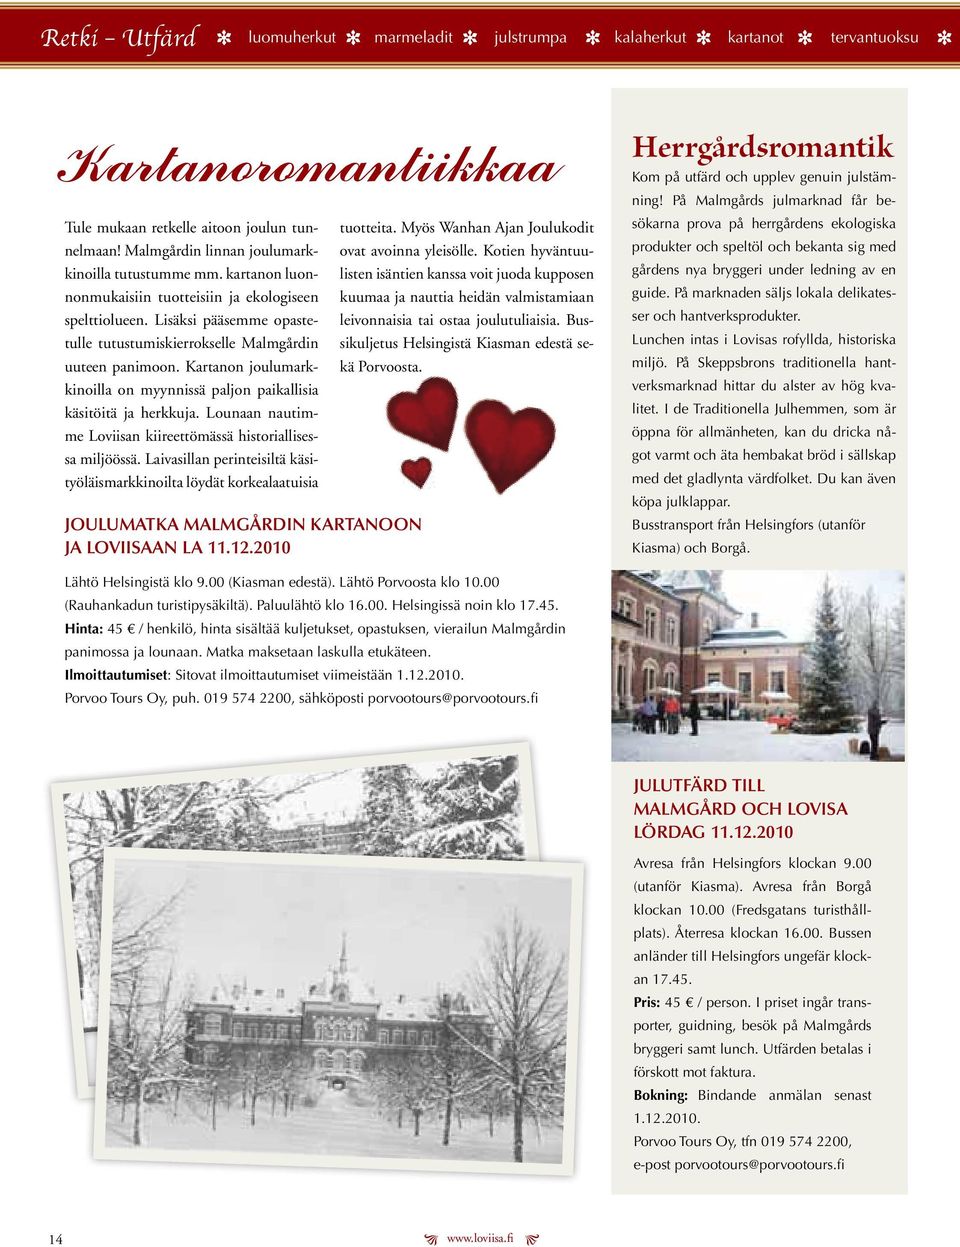 Kartanon joulumarkkinoilla on myynnissä paljon paikallisia käsitöitä ja hrkkuja. Lounaan nautimm Loviisan kiirttömässä historiallisssa miljöössä.